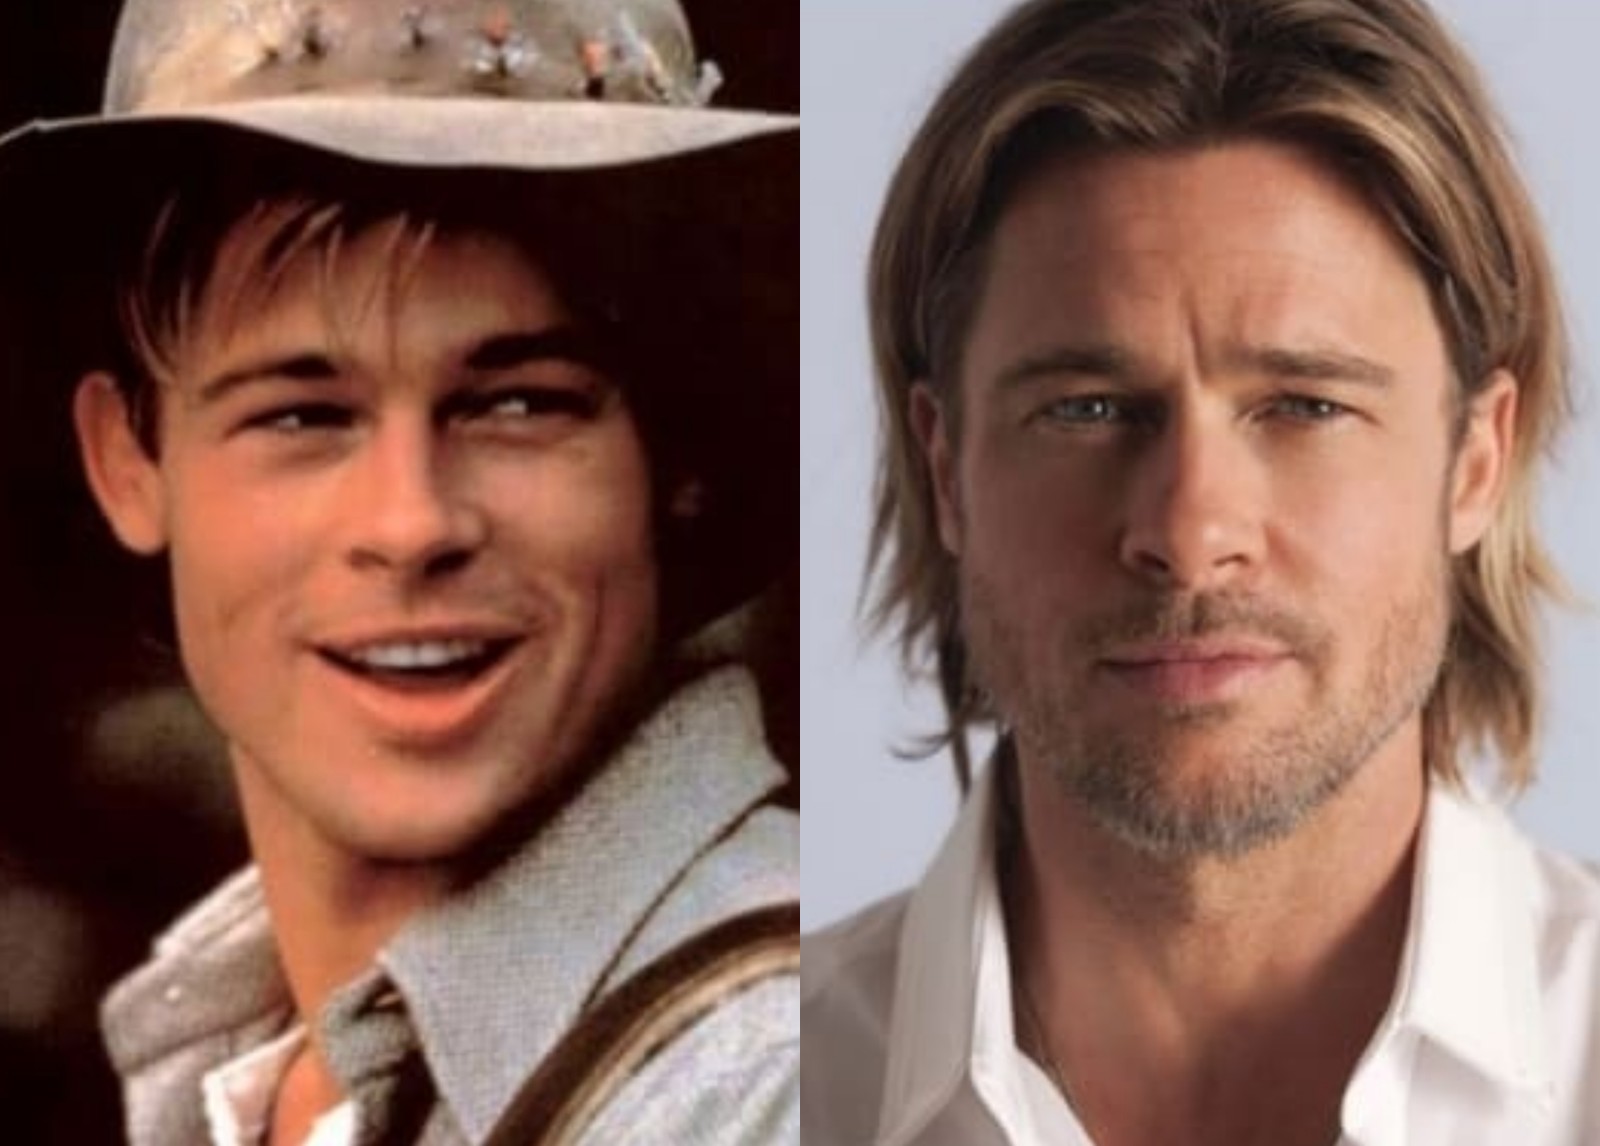 Otoplastia: antes e depois do ator Brad Pitt